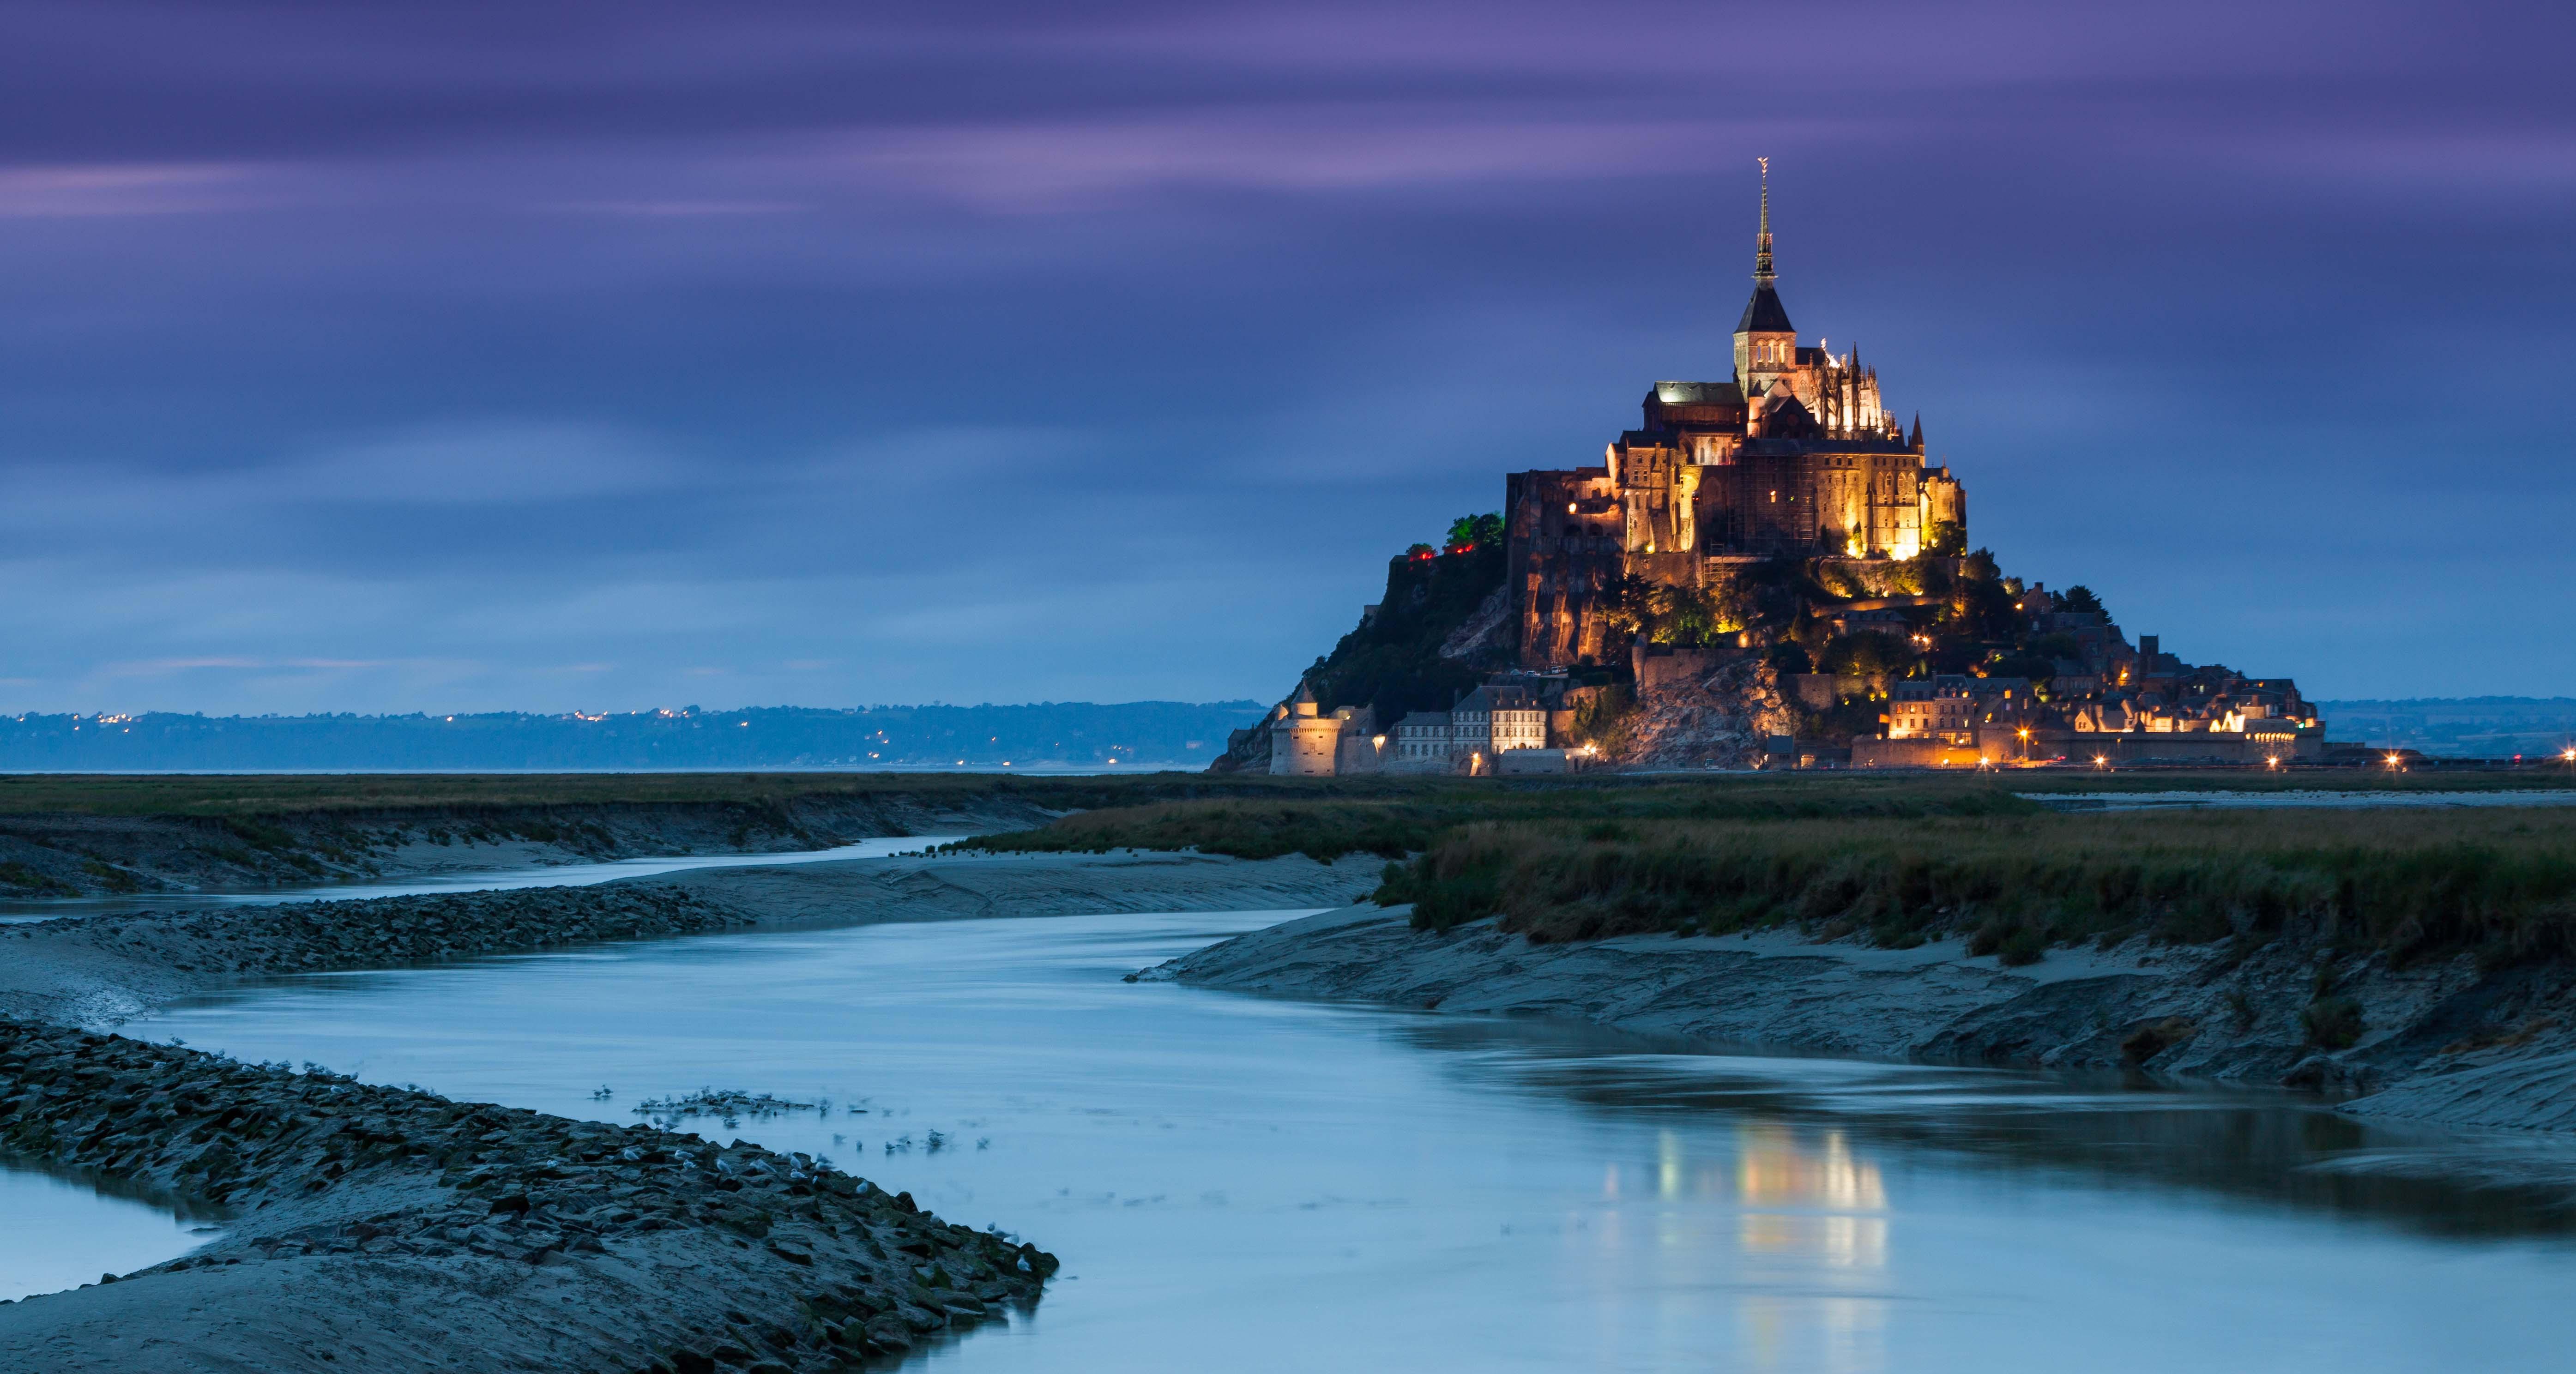 去法国旅游,最容易忽略的美景有哪些?